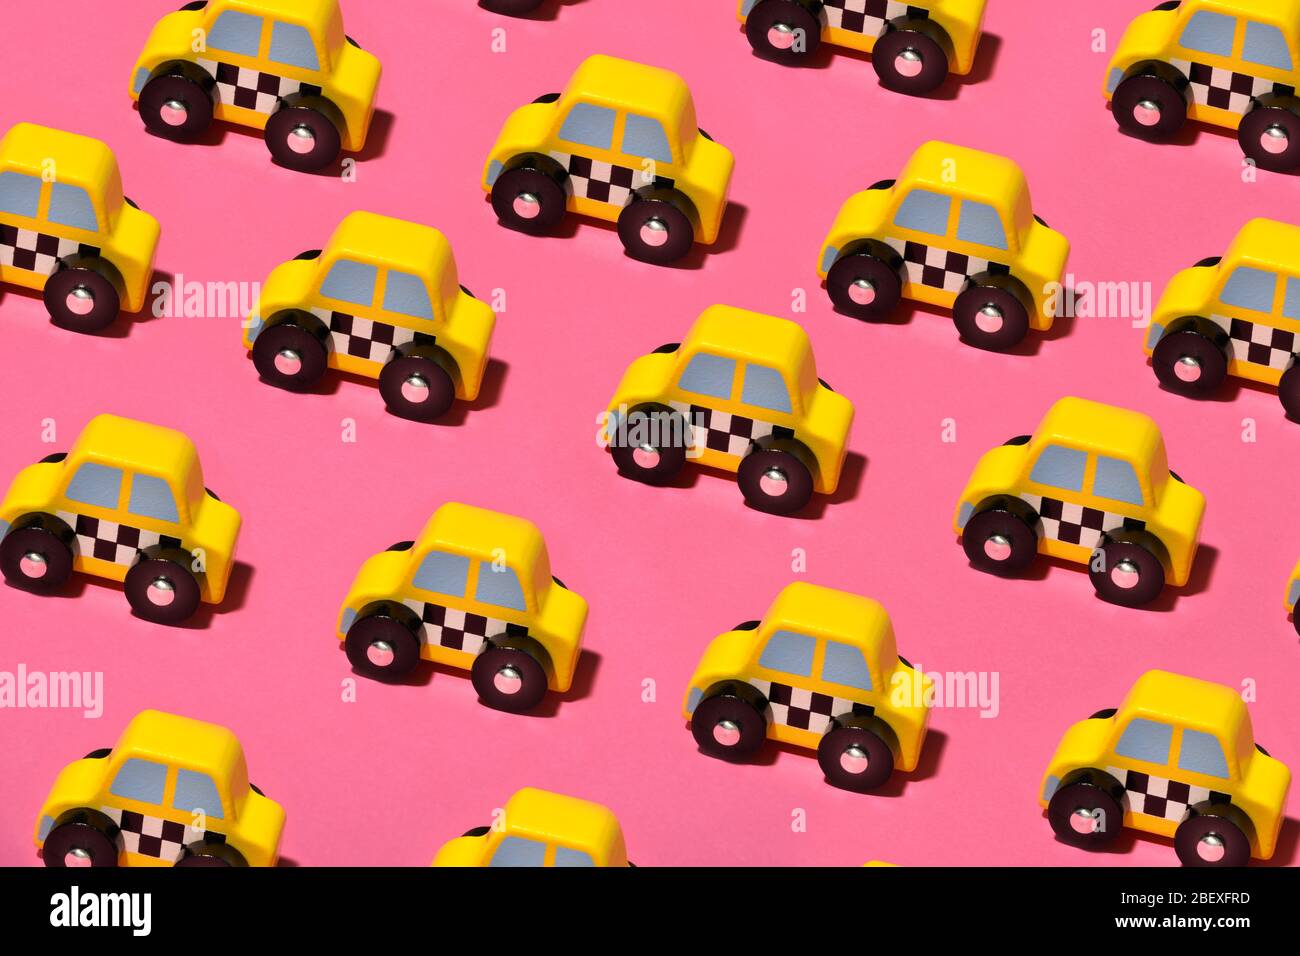 Reihen von kleinen gelben Spielzeug Taxis oder Taxis auf einem bunten rosa Hintergrund gesehen hohen Winkel im Vollformat Stockfoto